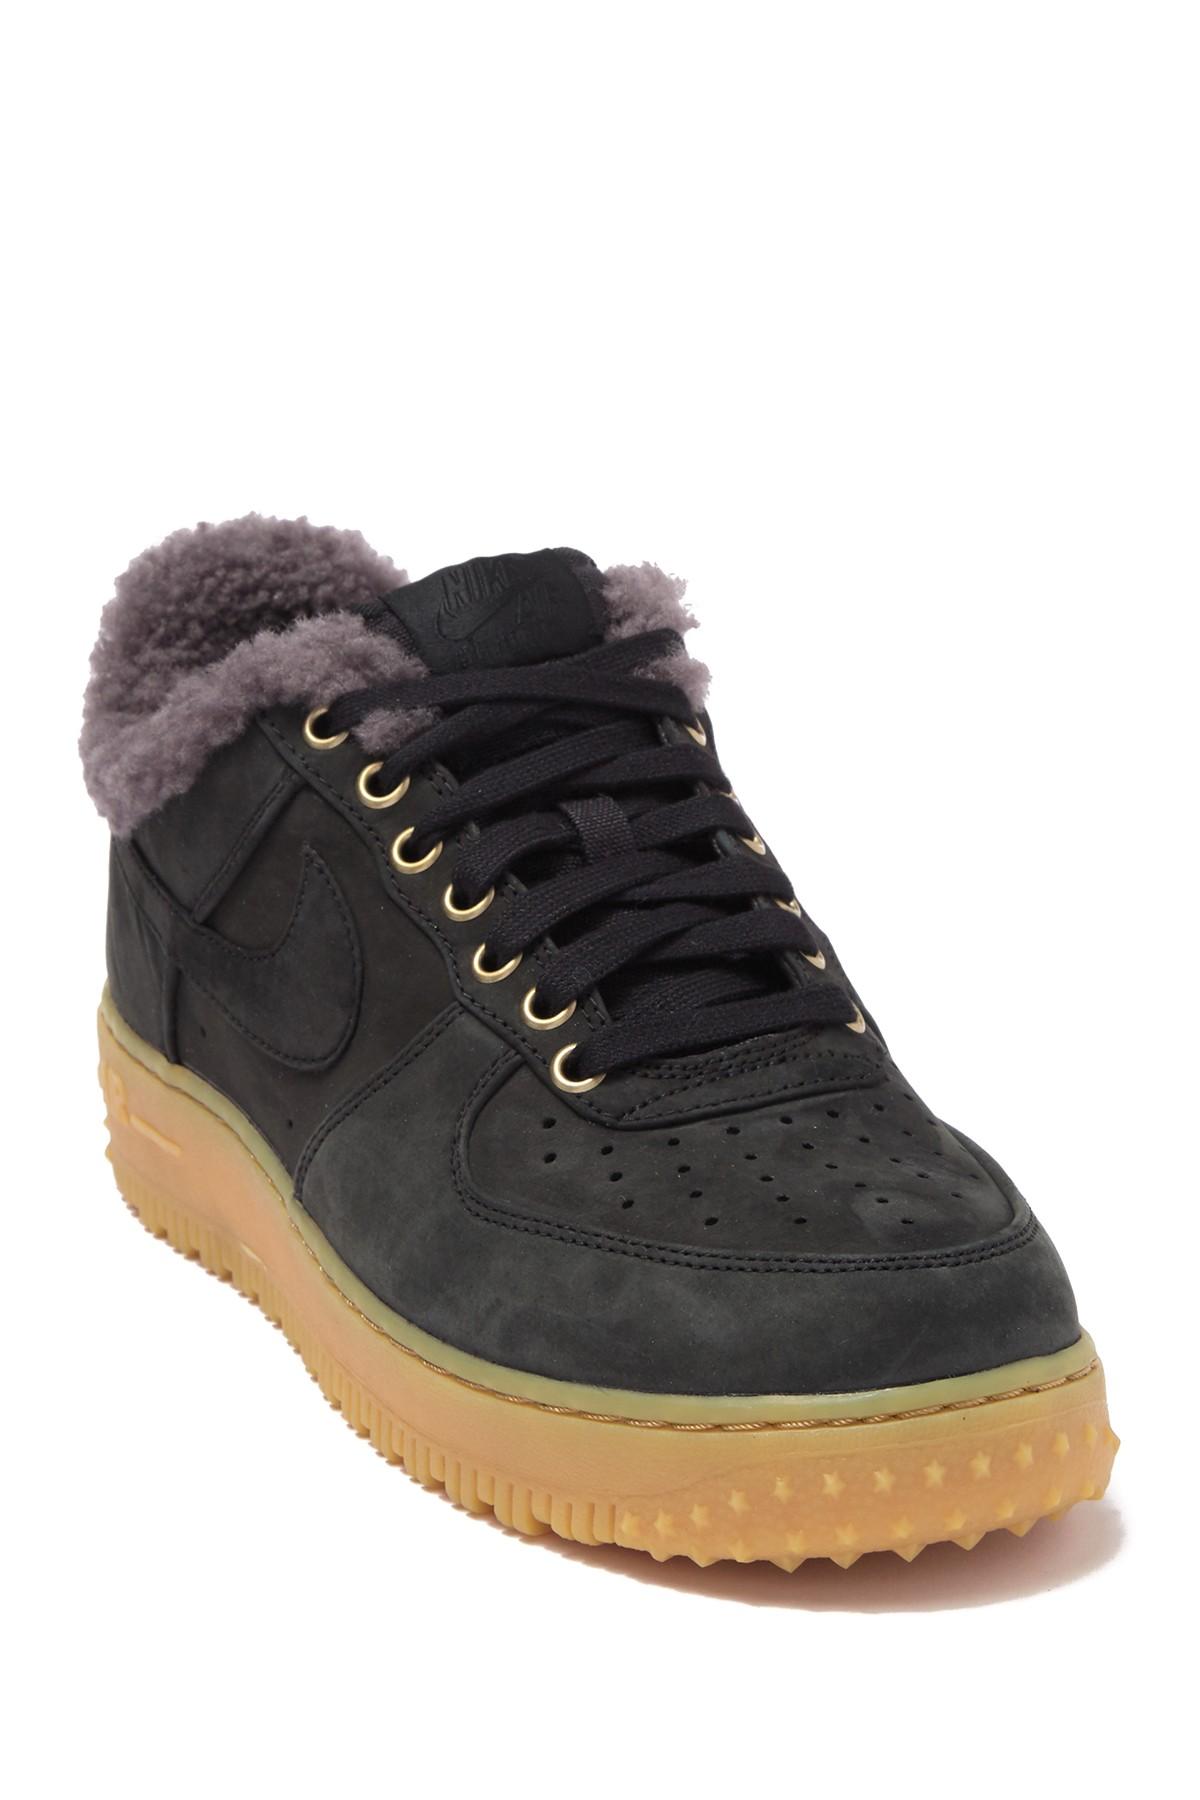 nike air force 1 premium winter men's shoe